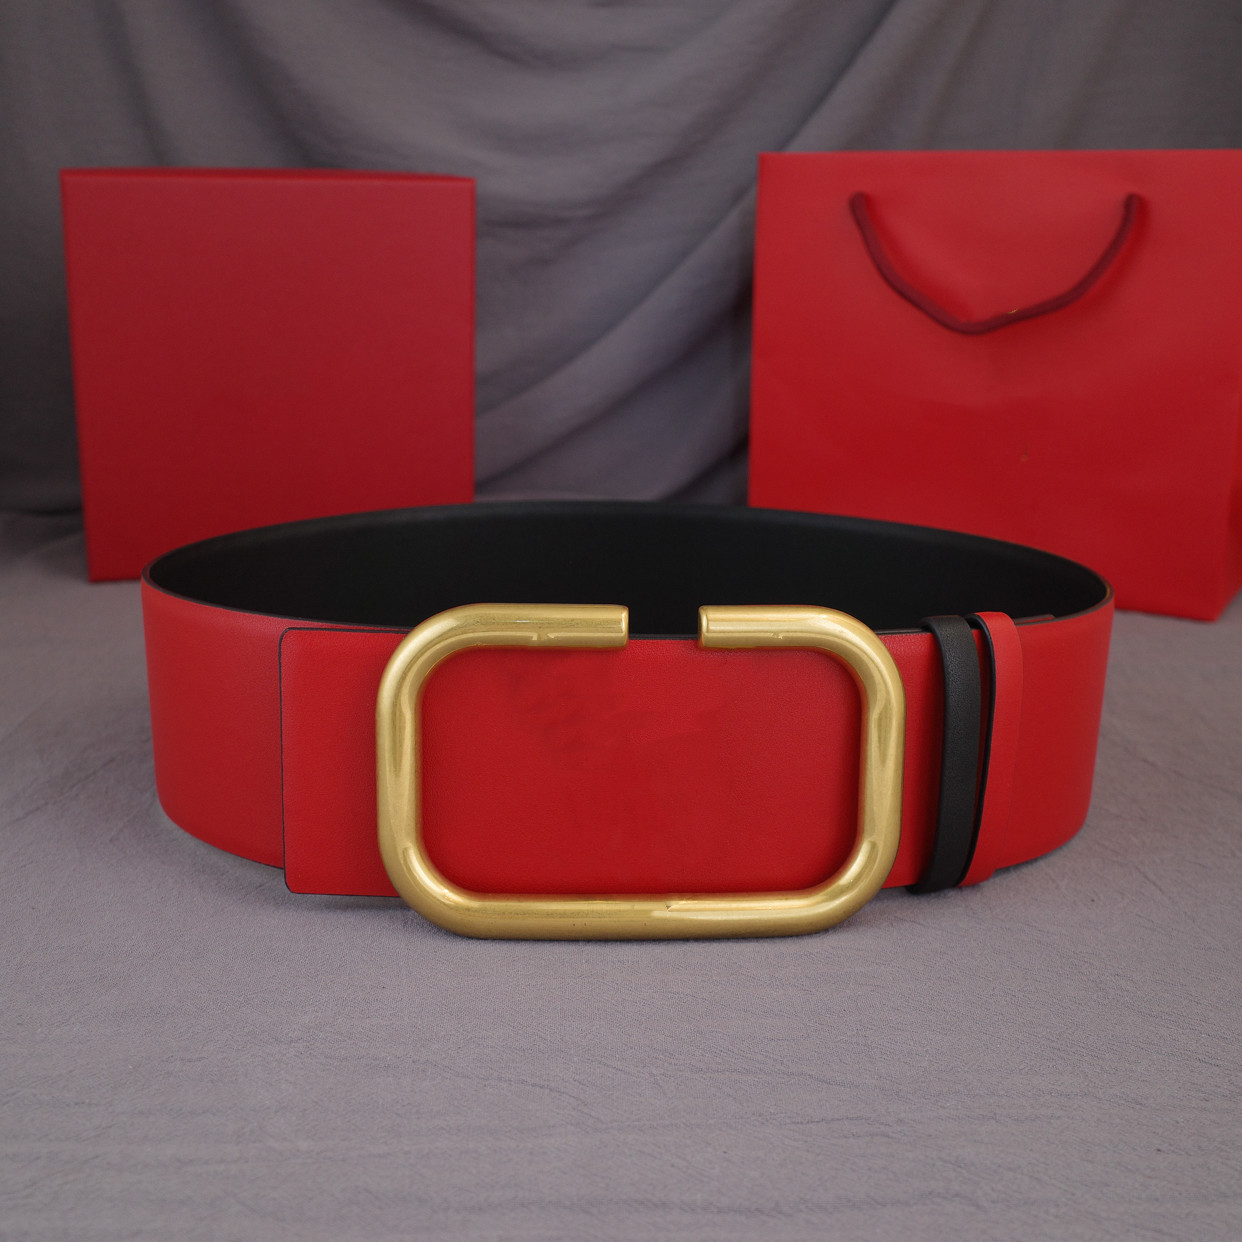 2022 Moda Hombres Clásicos Diseñadores Cinturones Para Mujer Para Hombre Carta Casual Hebilla Lisa Cinturón Ancho 7 0 cm con caja Sin carga283m